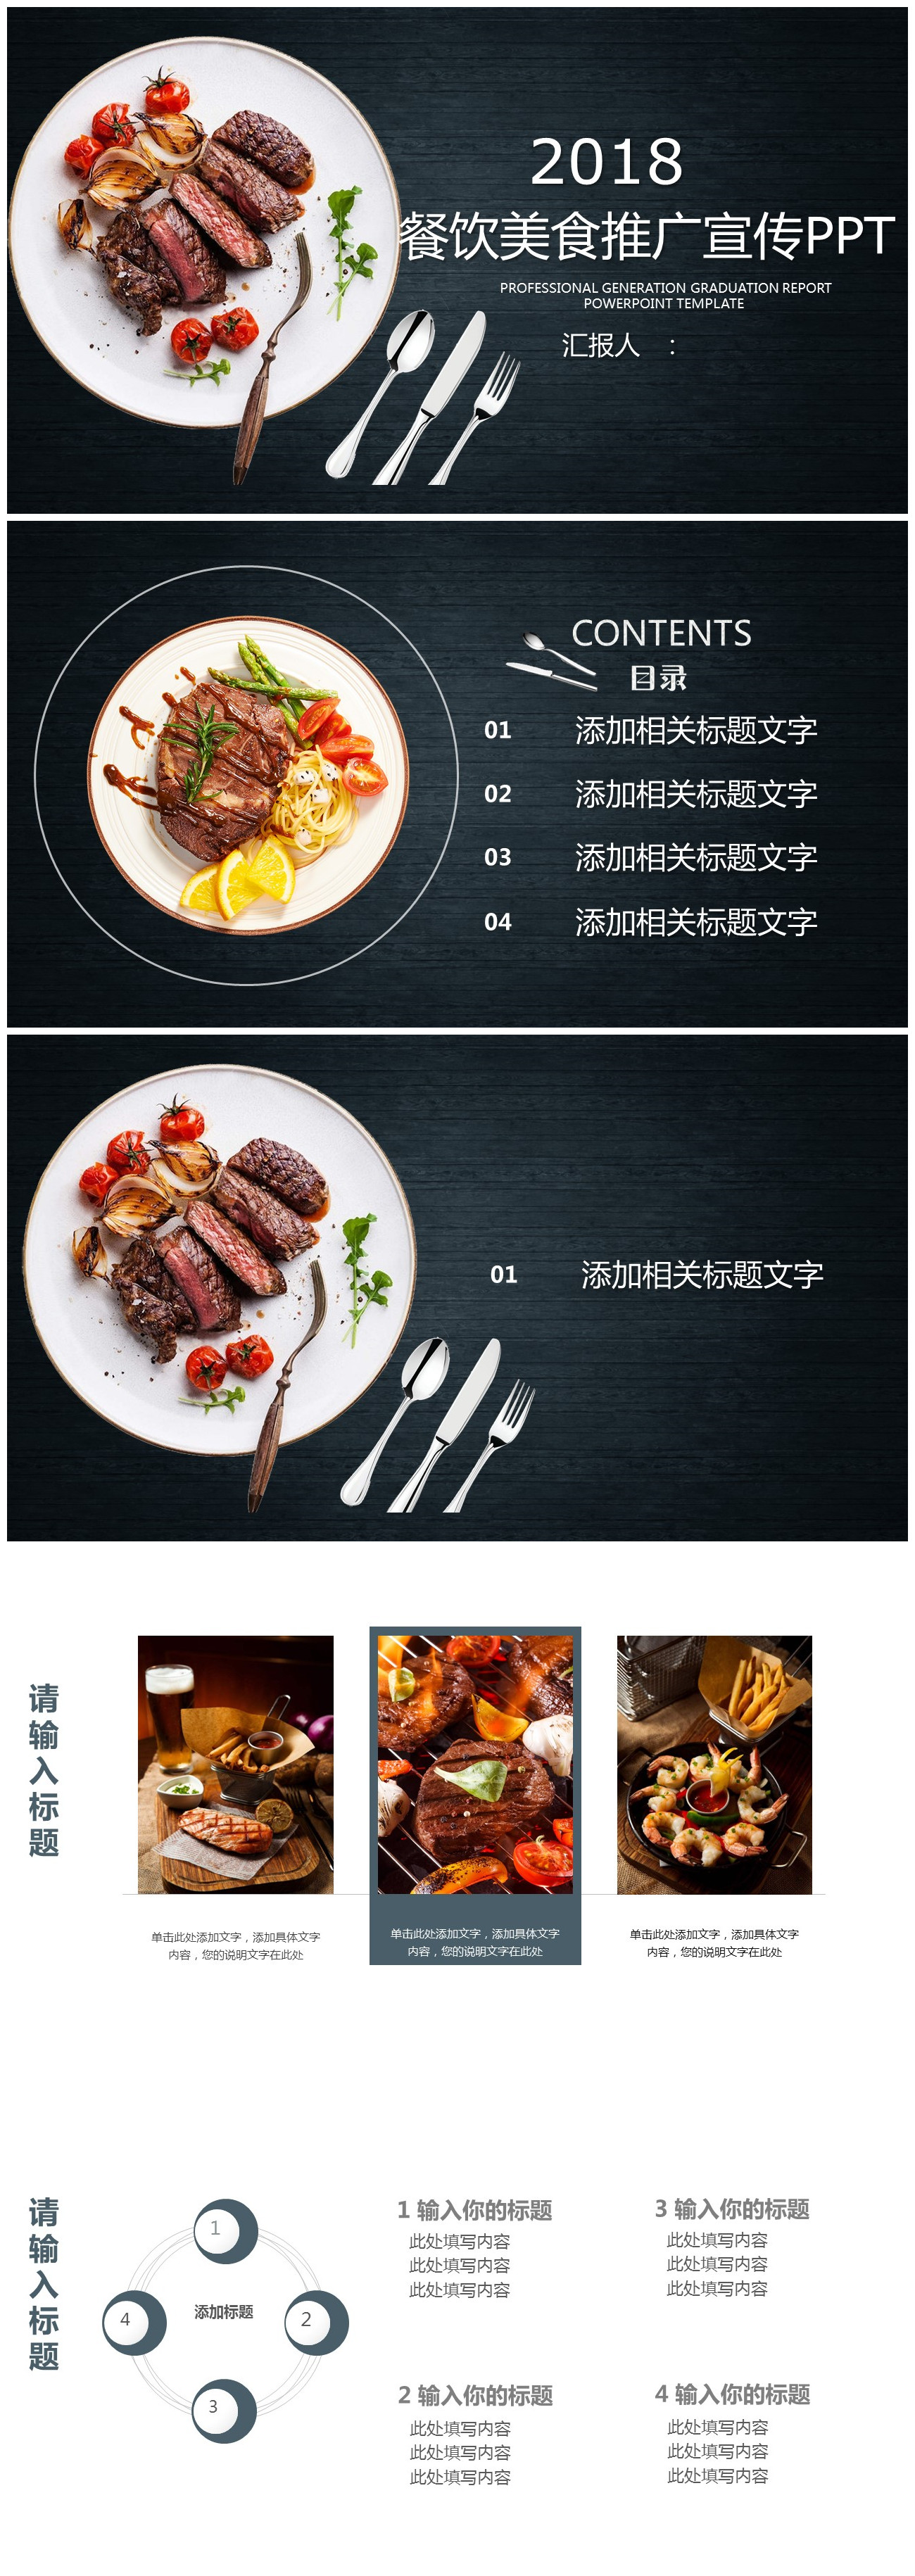 欧美风餐饮美食推广宣传PPT模板下载-聚给网